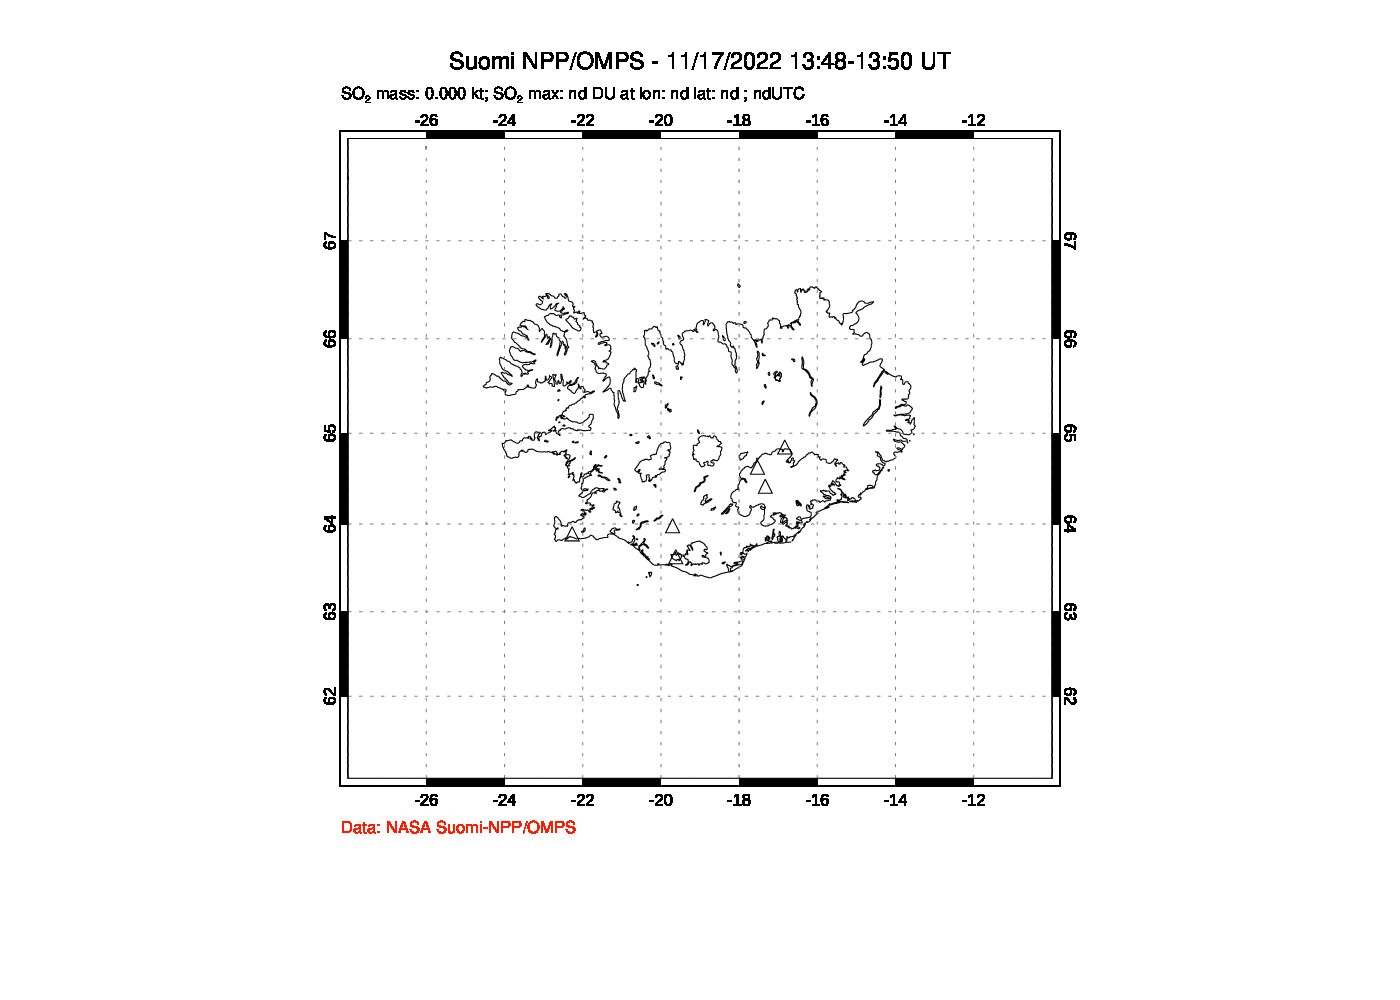 A sulfur dioxide image over Iceland on Nov 17, 2022.